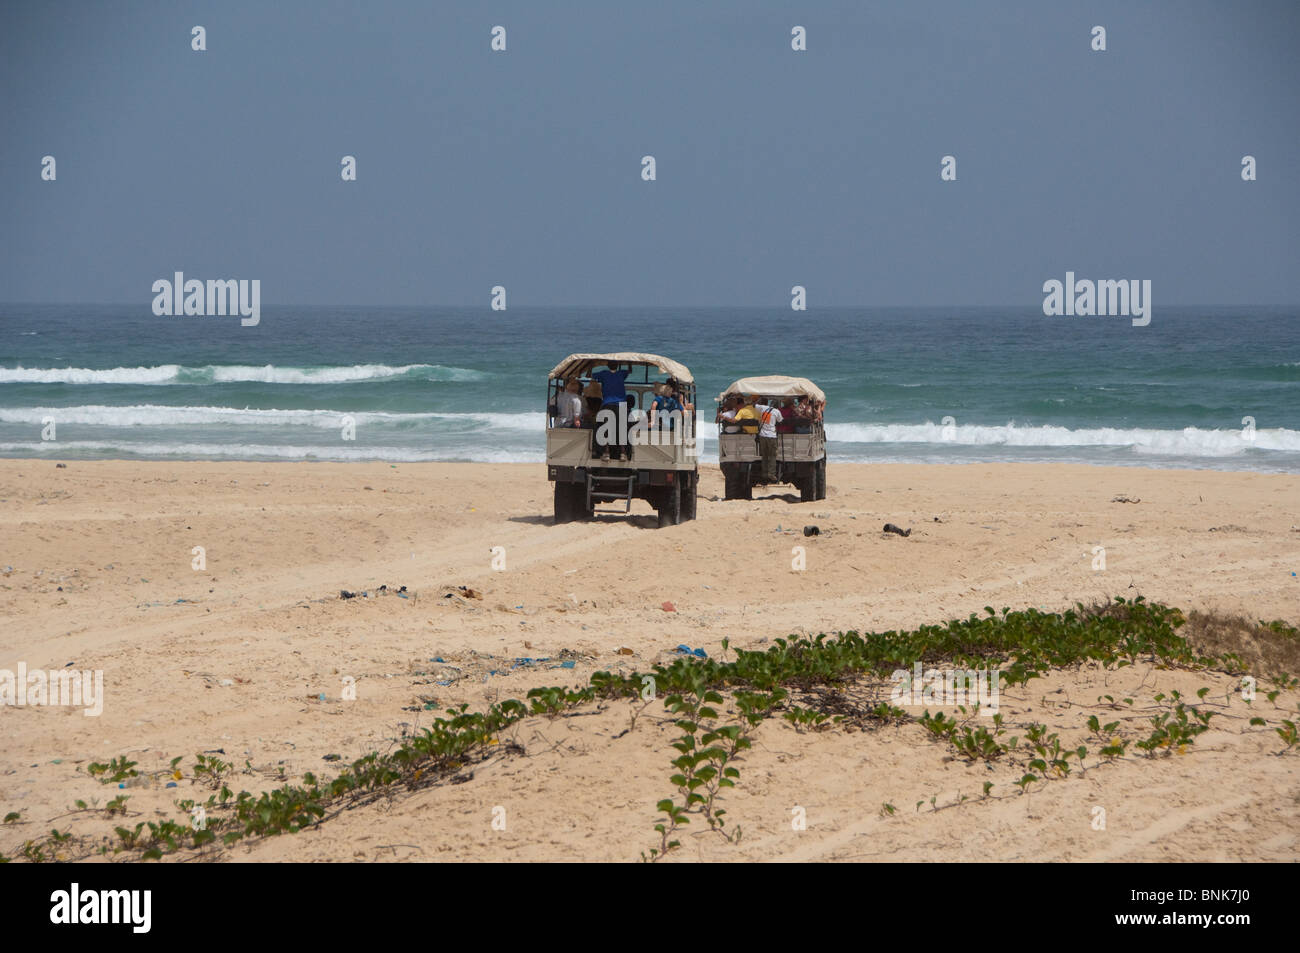 Afrique, Sénégal, Dakar. Explorer les dunes de sable et la plage autour du Lac Rose de Retba. Les touristes à la découverte de la plage de l'Atlantique Banque D'Images